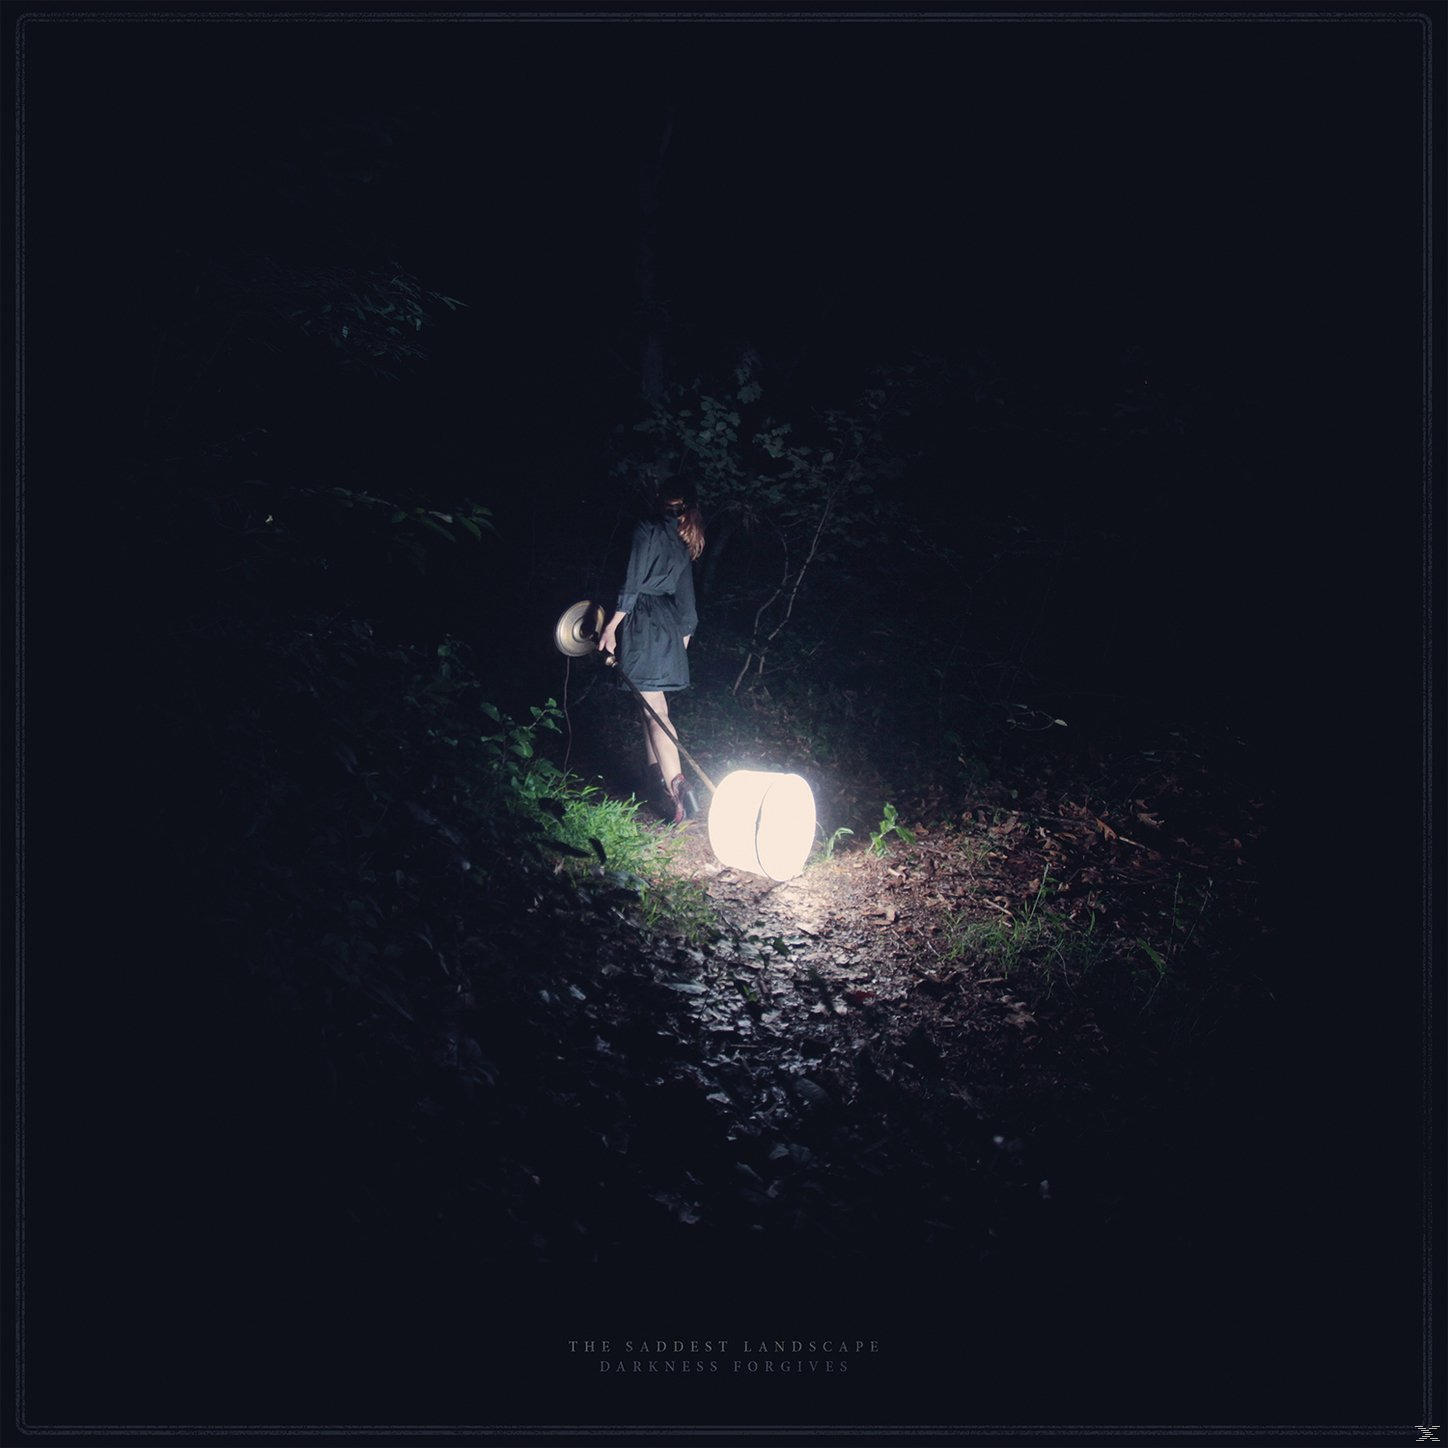 The Saddest Landscape Forgives - (CD) - Darkness